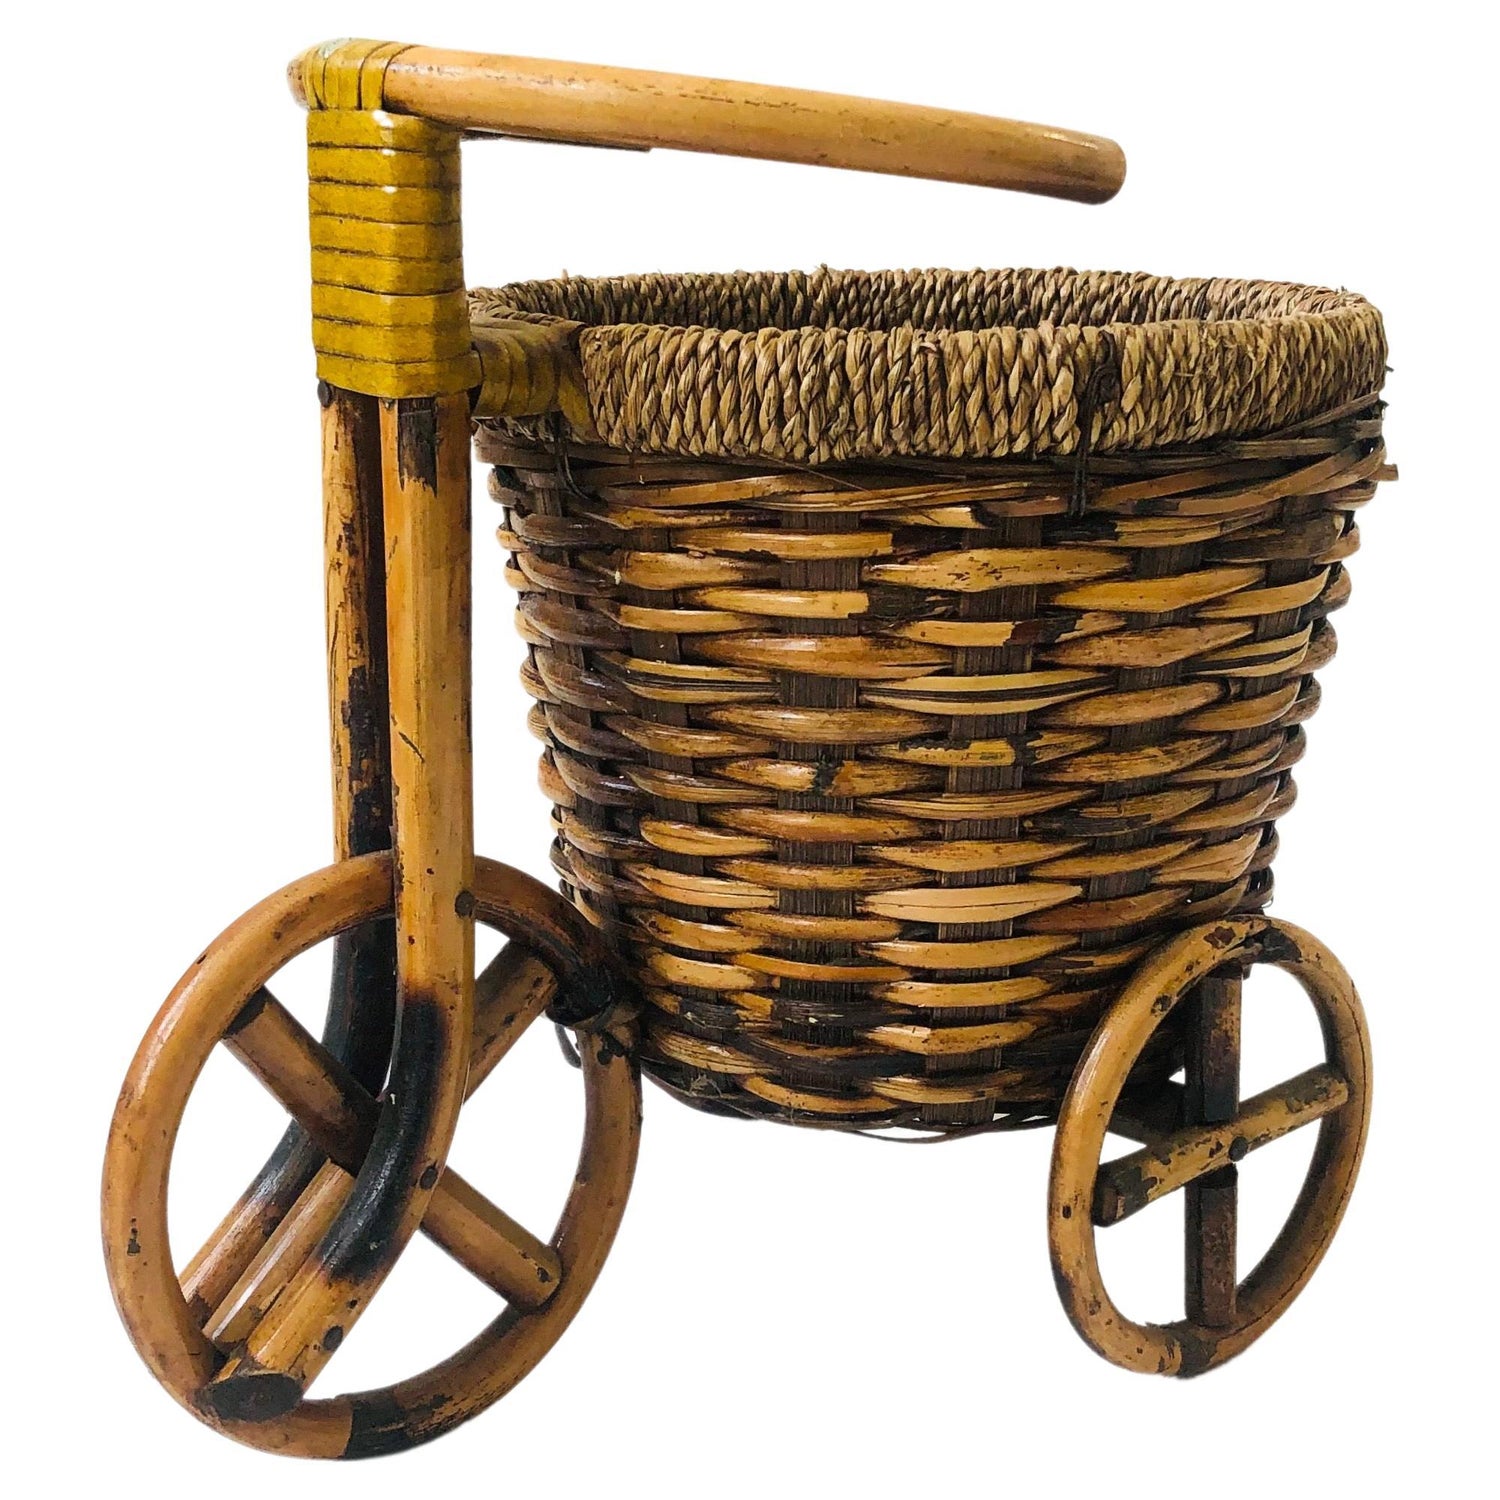 Flat Basket - 174 For Sale on 1stDibs  flat basket with handle, round flat  basket, large flat basket with handle